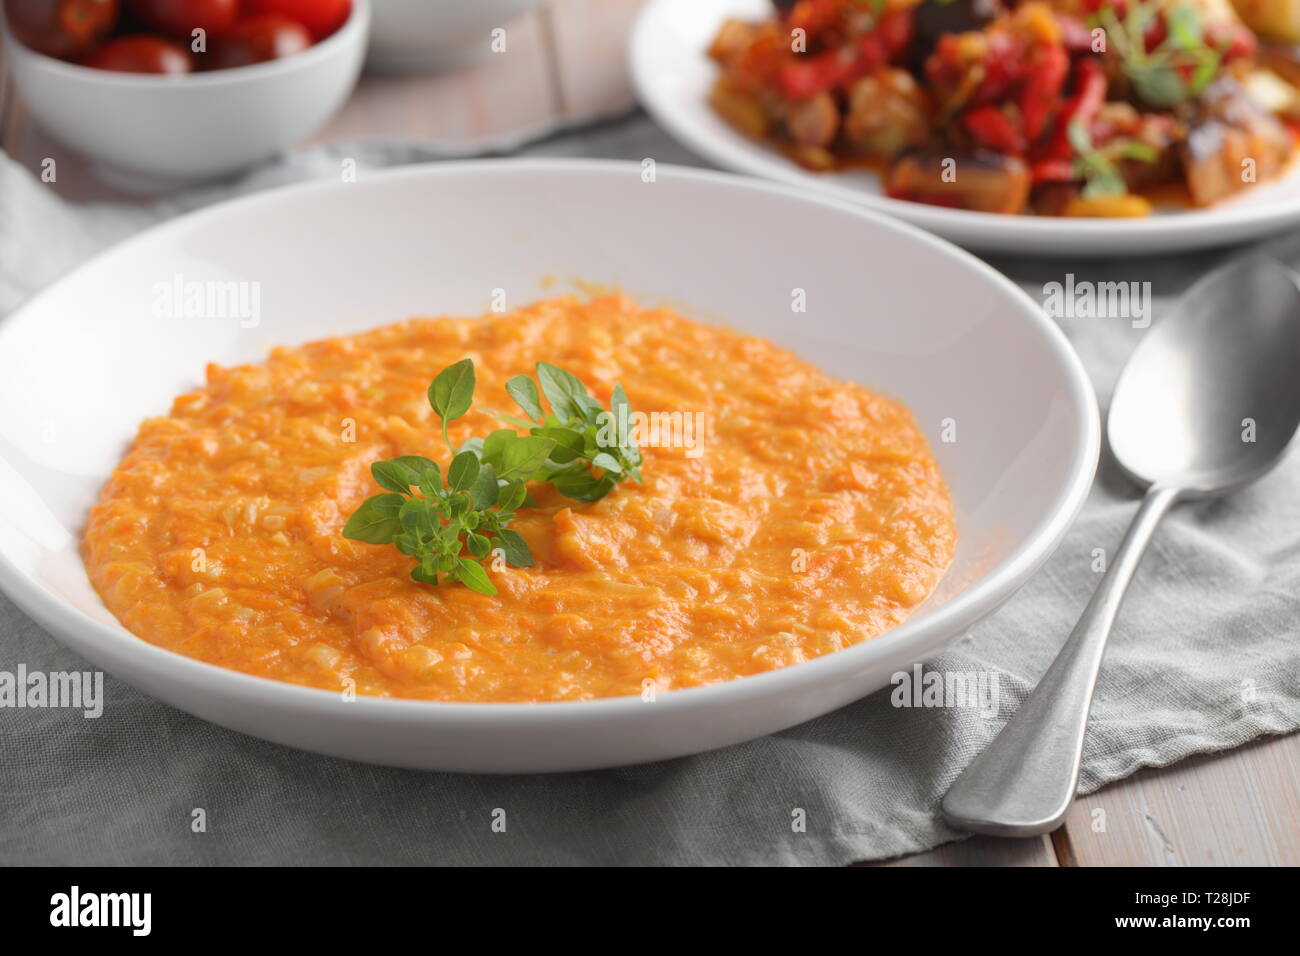 Zuppa di zucca decorato con foglia di basilico in un pranzo vegetariano Foto Stock